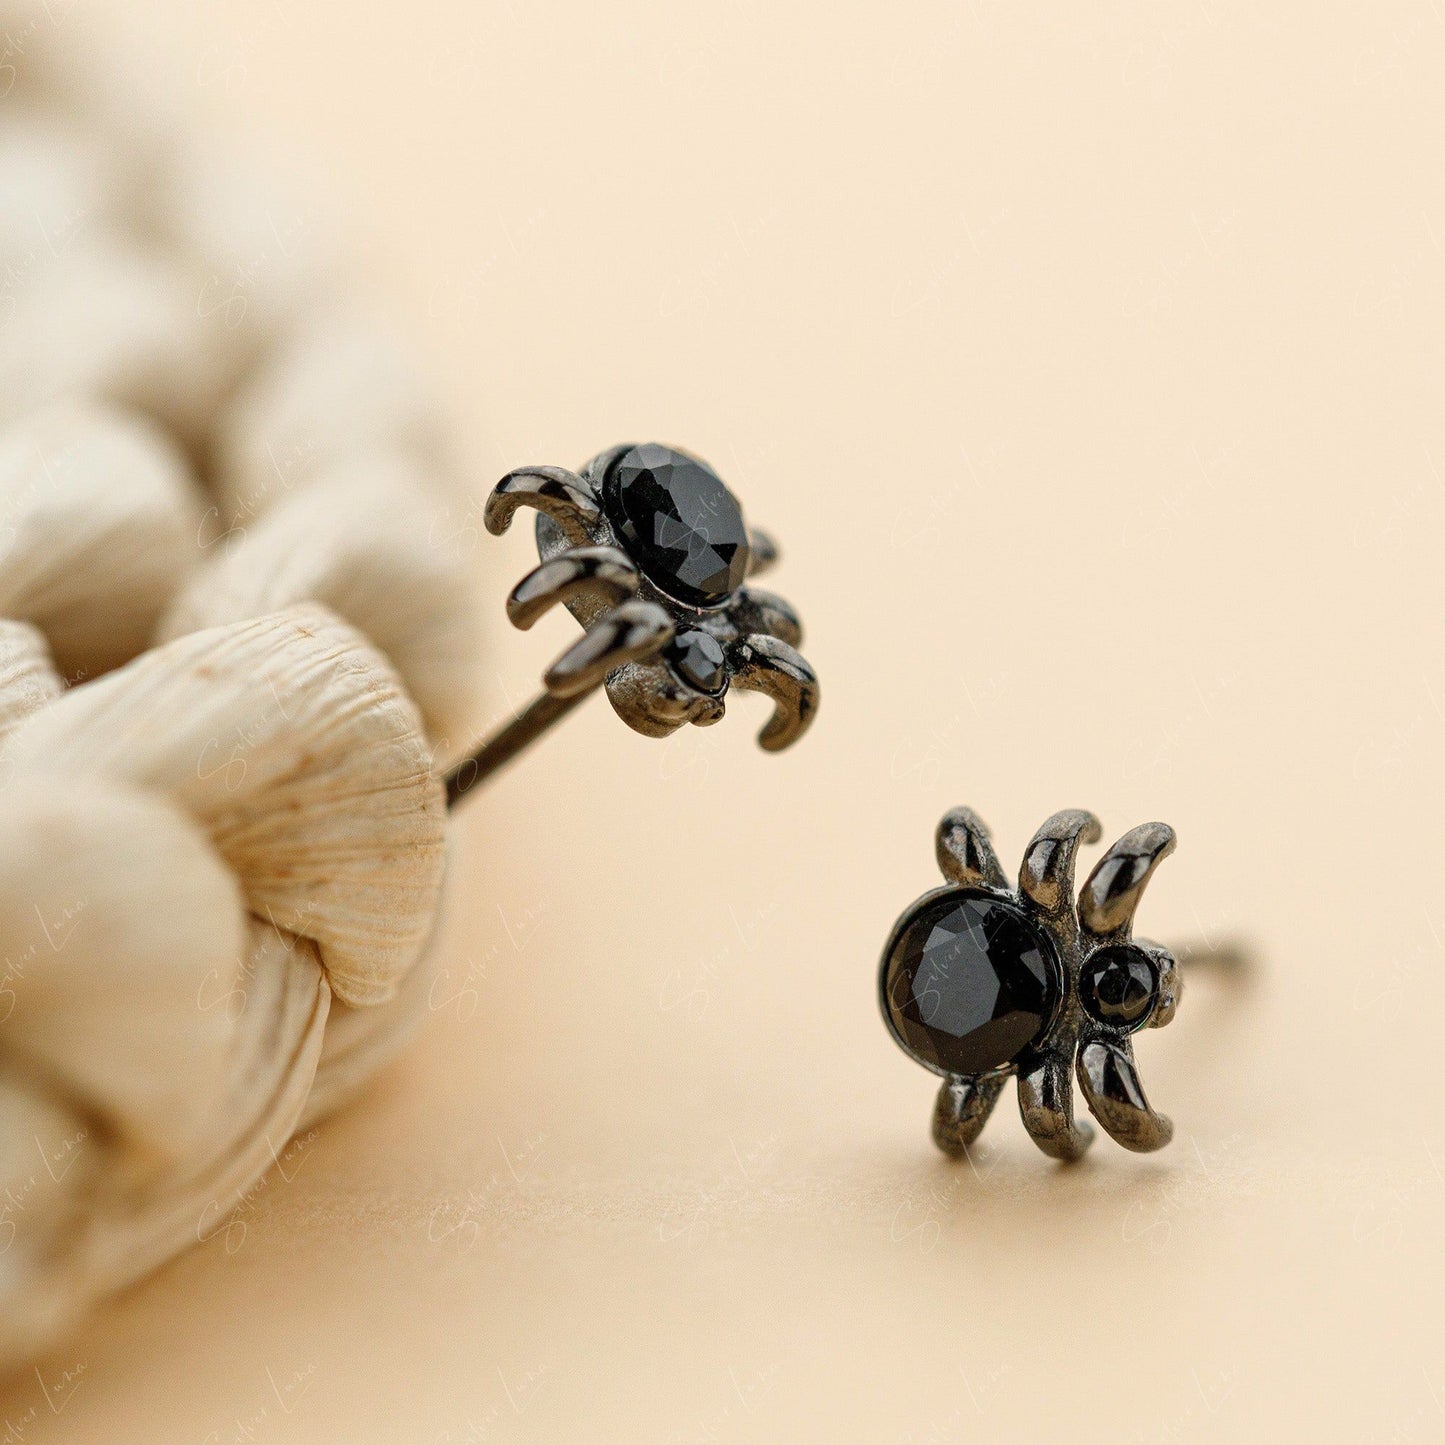 Tiny black spider stud earrings